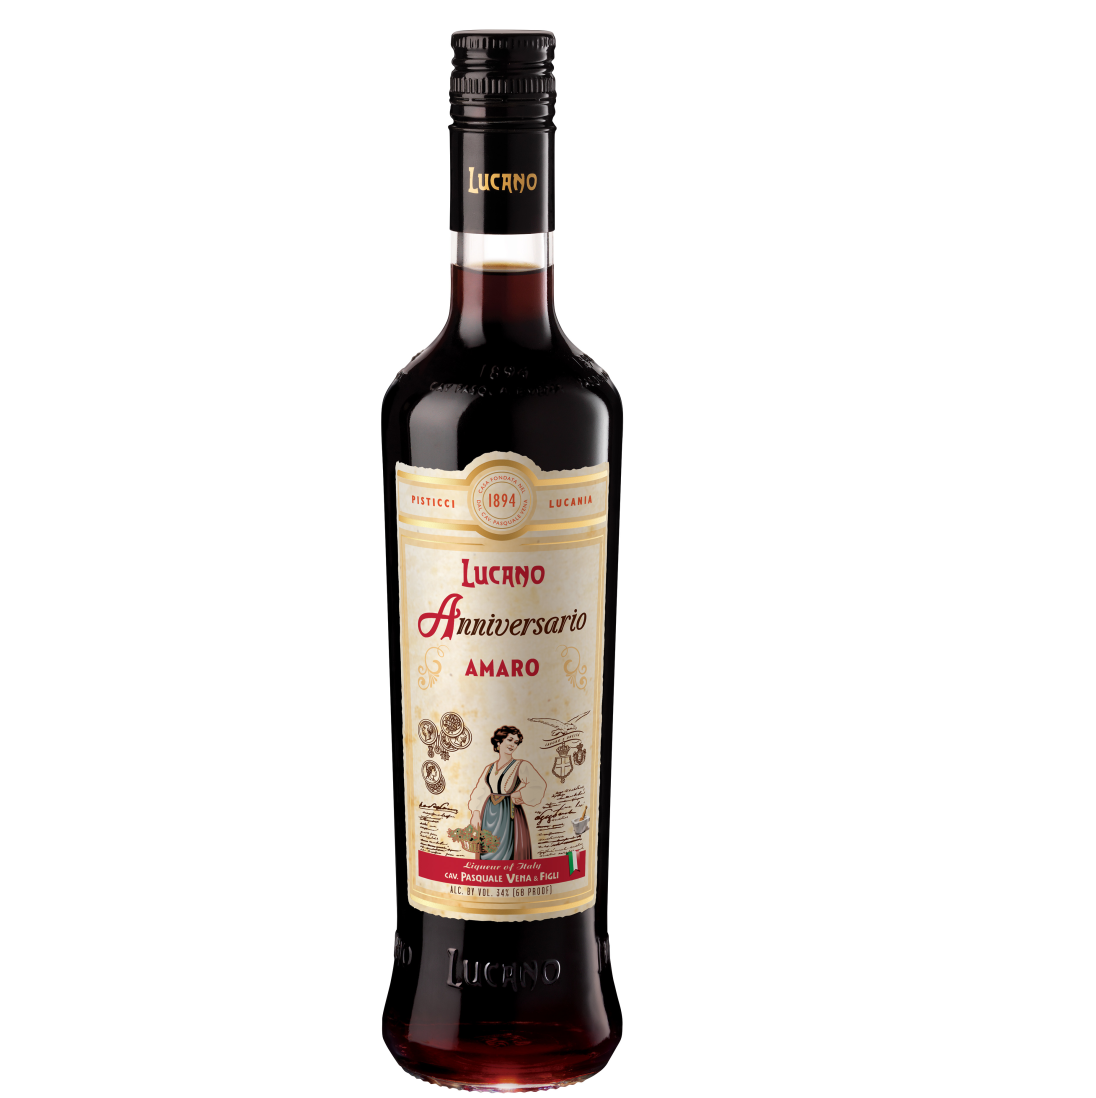 Lucano Anniversario Amaro Liqueur 750ml